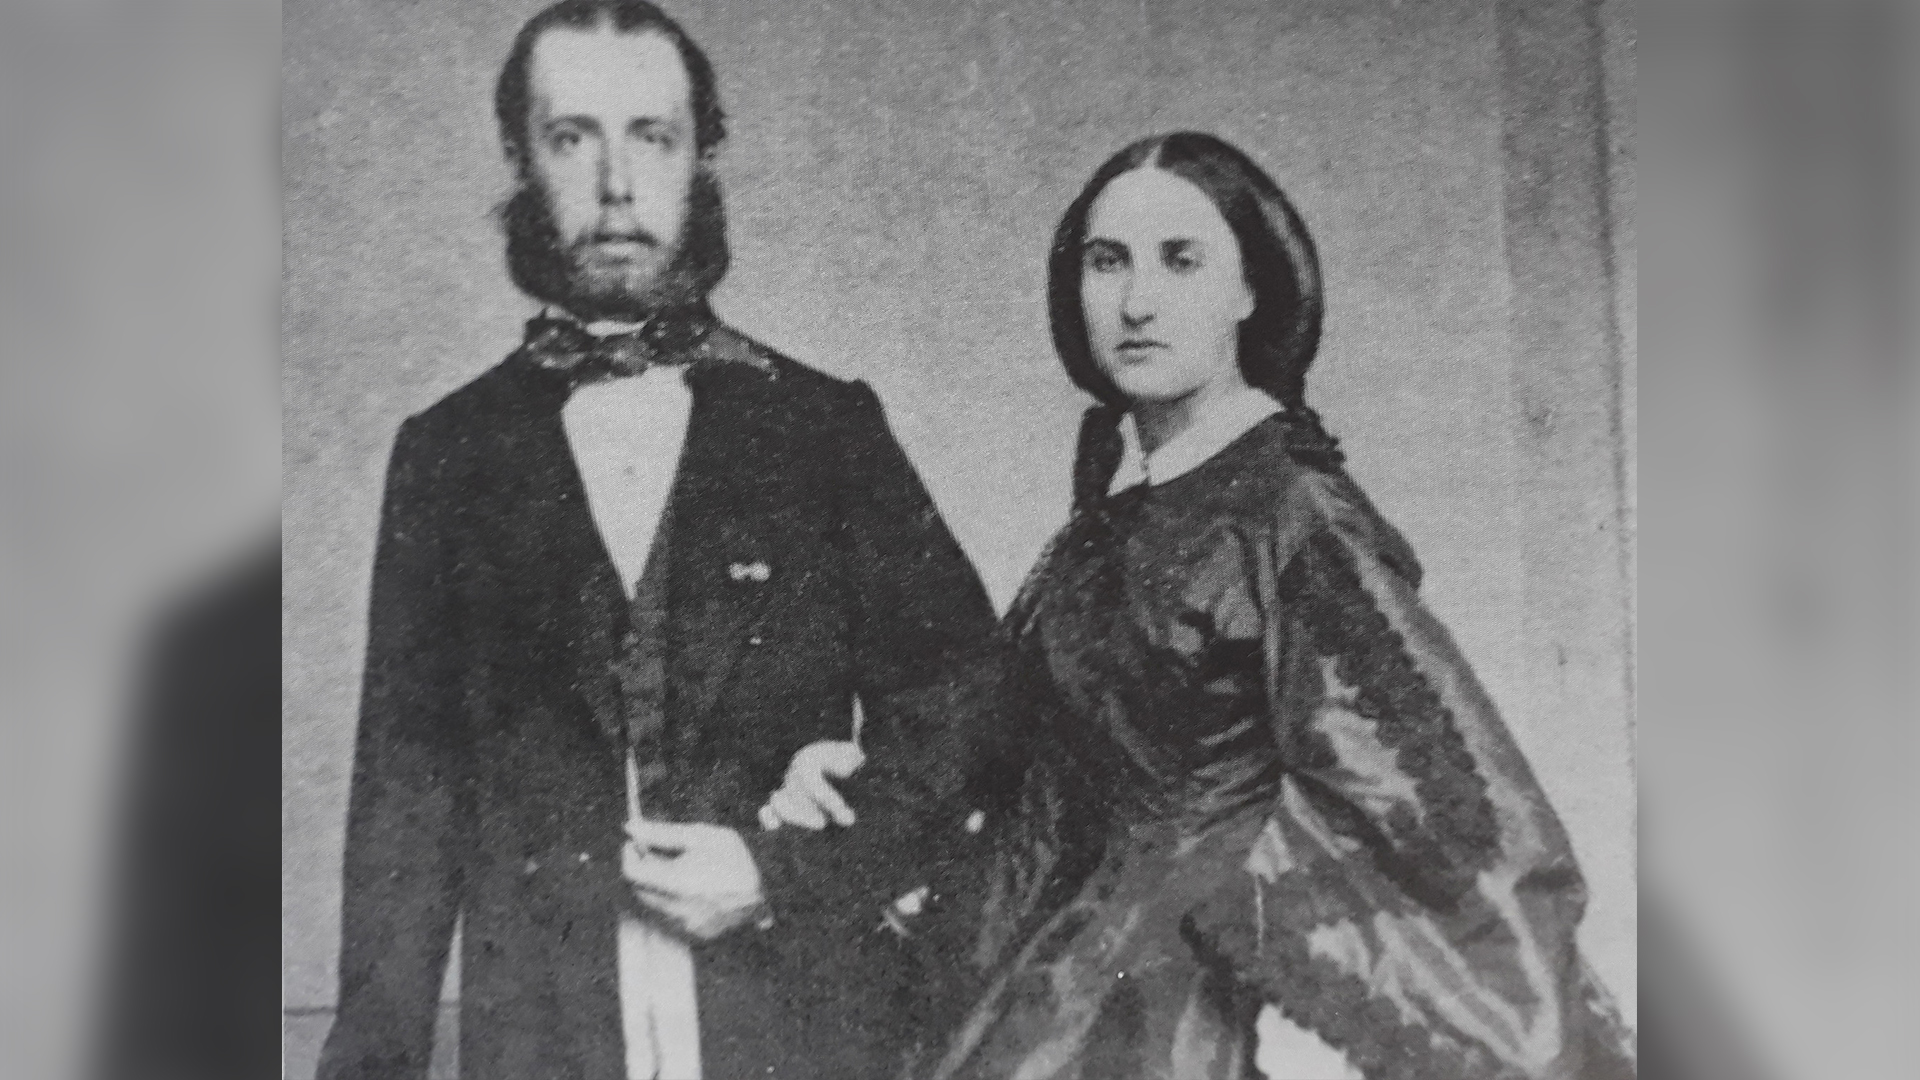 El imperio de Maximiliano y Carlota en México se extendió de 1864 a 1867 (Imagen del libro "La fotografía durante el imperio de Maximiliano)